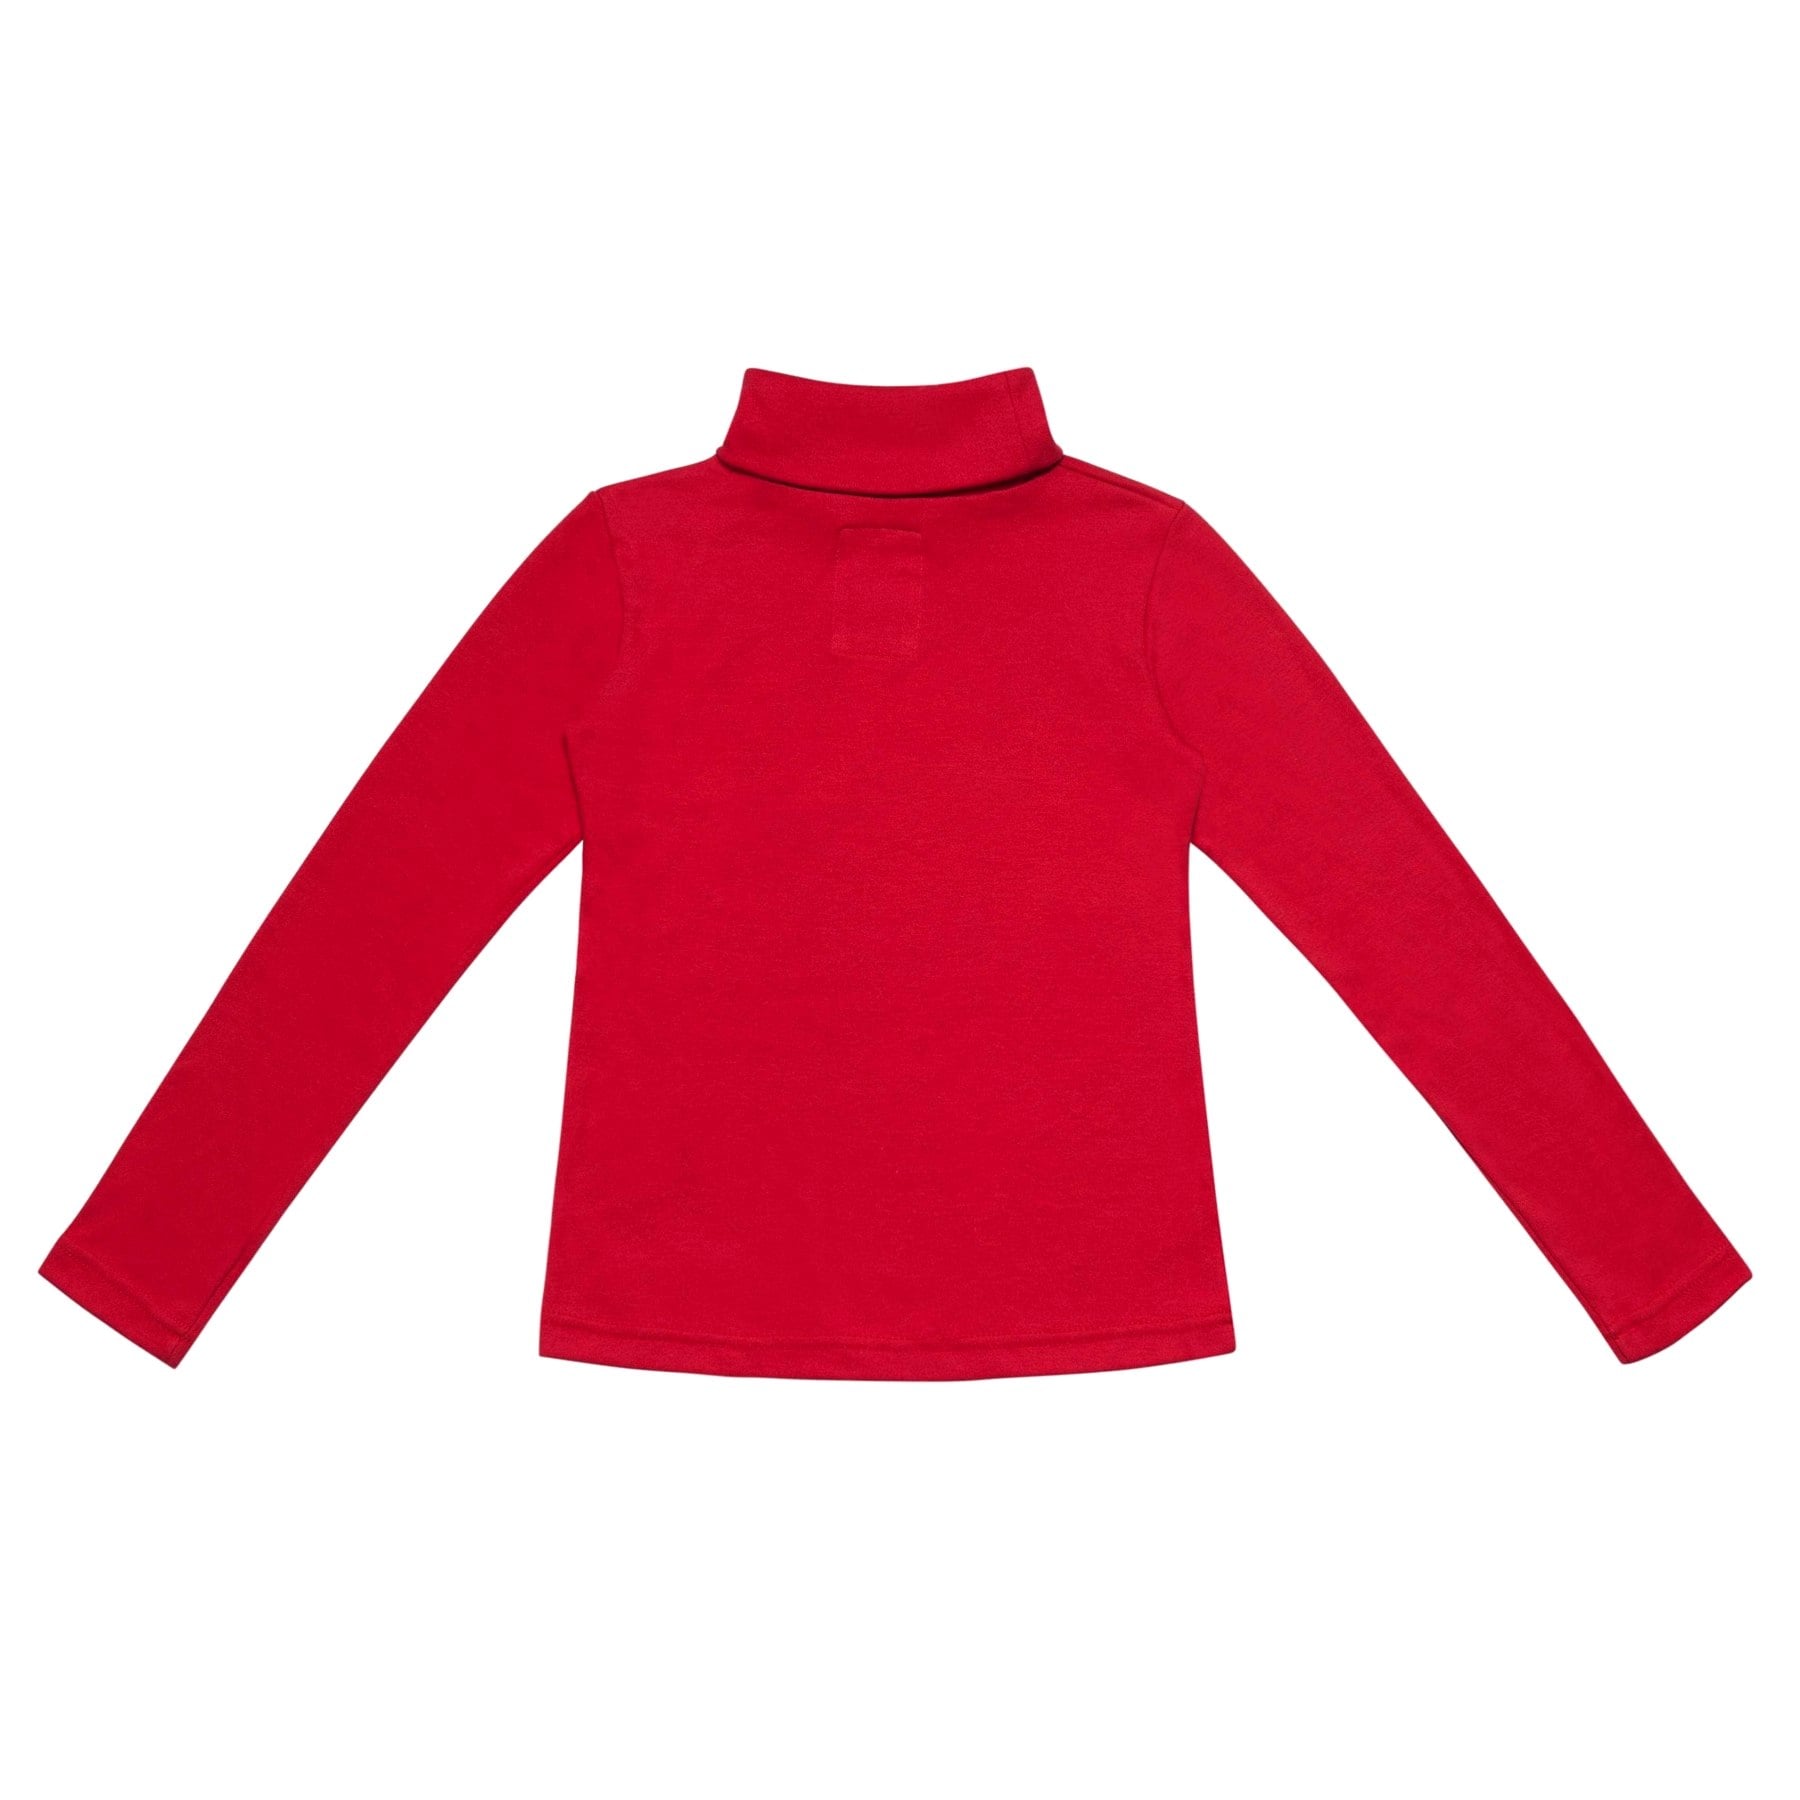 Pull Col Roulé coton jersey rouge, Filles Garçons 2-14 ans